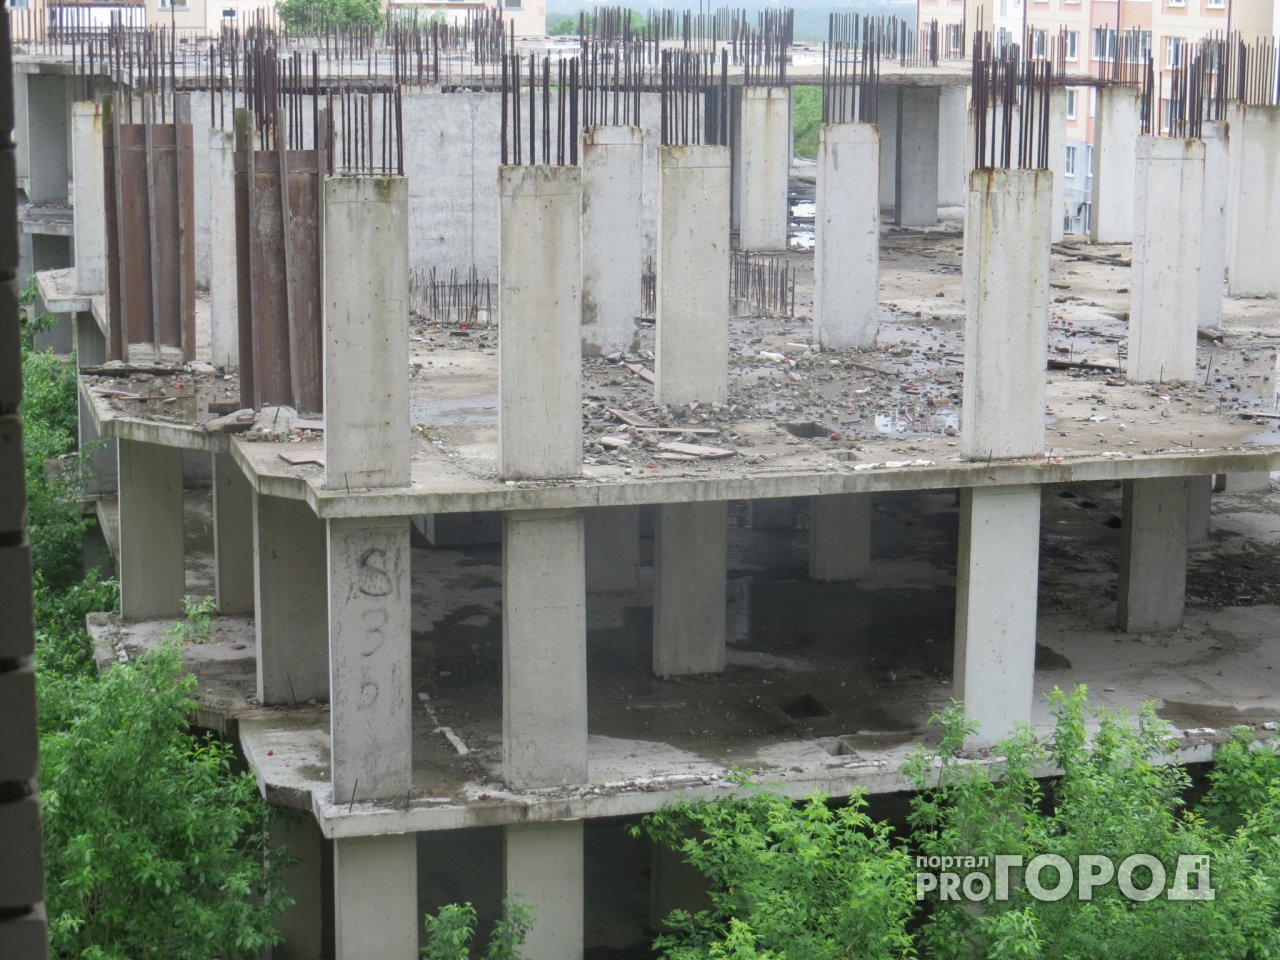 Что обсуждают в Кирове: незаконная стройка и демонтаж нового арт-объекта